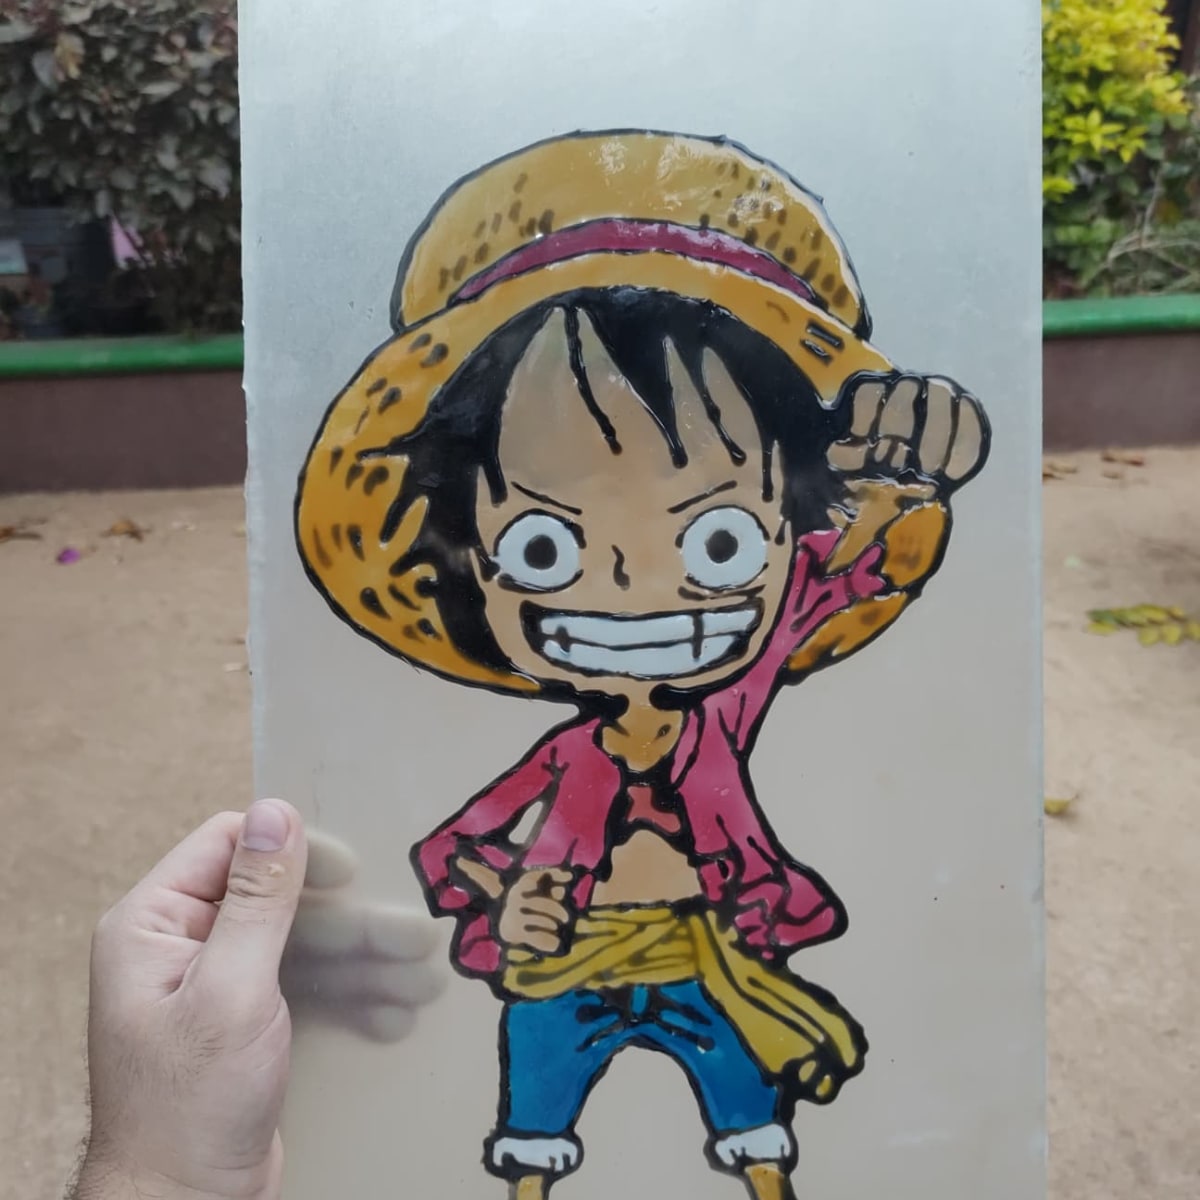 Với Pintura vitral Luffy, bạn sẽ có cơ hội khám phá một khía cạnh hoàn toàn mới trong nghệ thuật. Được tạo ra từ những khối sắc màu tinh tế, tác phẩm này sẽ mang đến cho bạn sự thư thái và đầy phong cách với hình ảnh nhân vật Luffy trong One Piece anime.